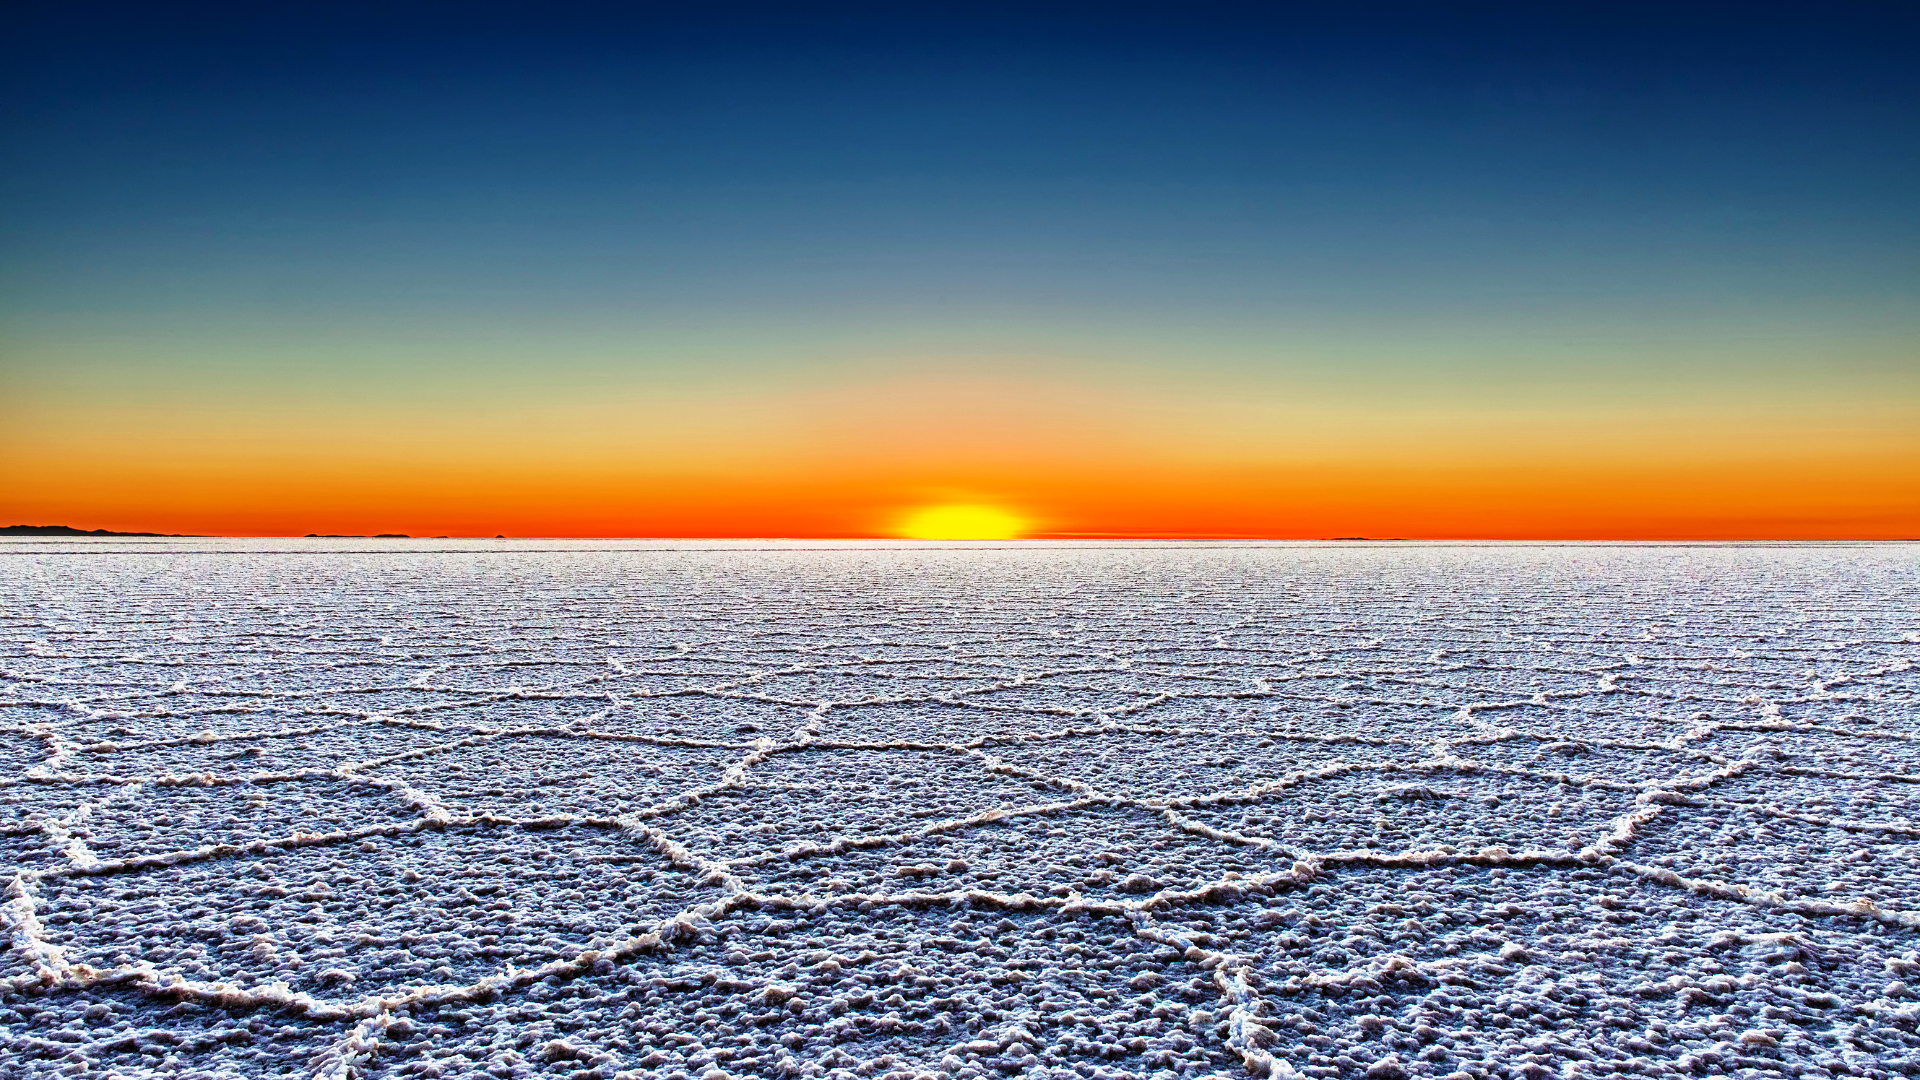 Sunset on the Uyuni Salt Flats